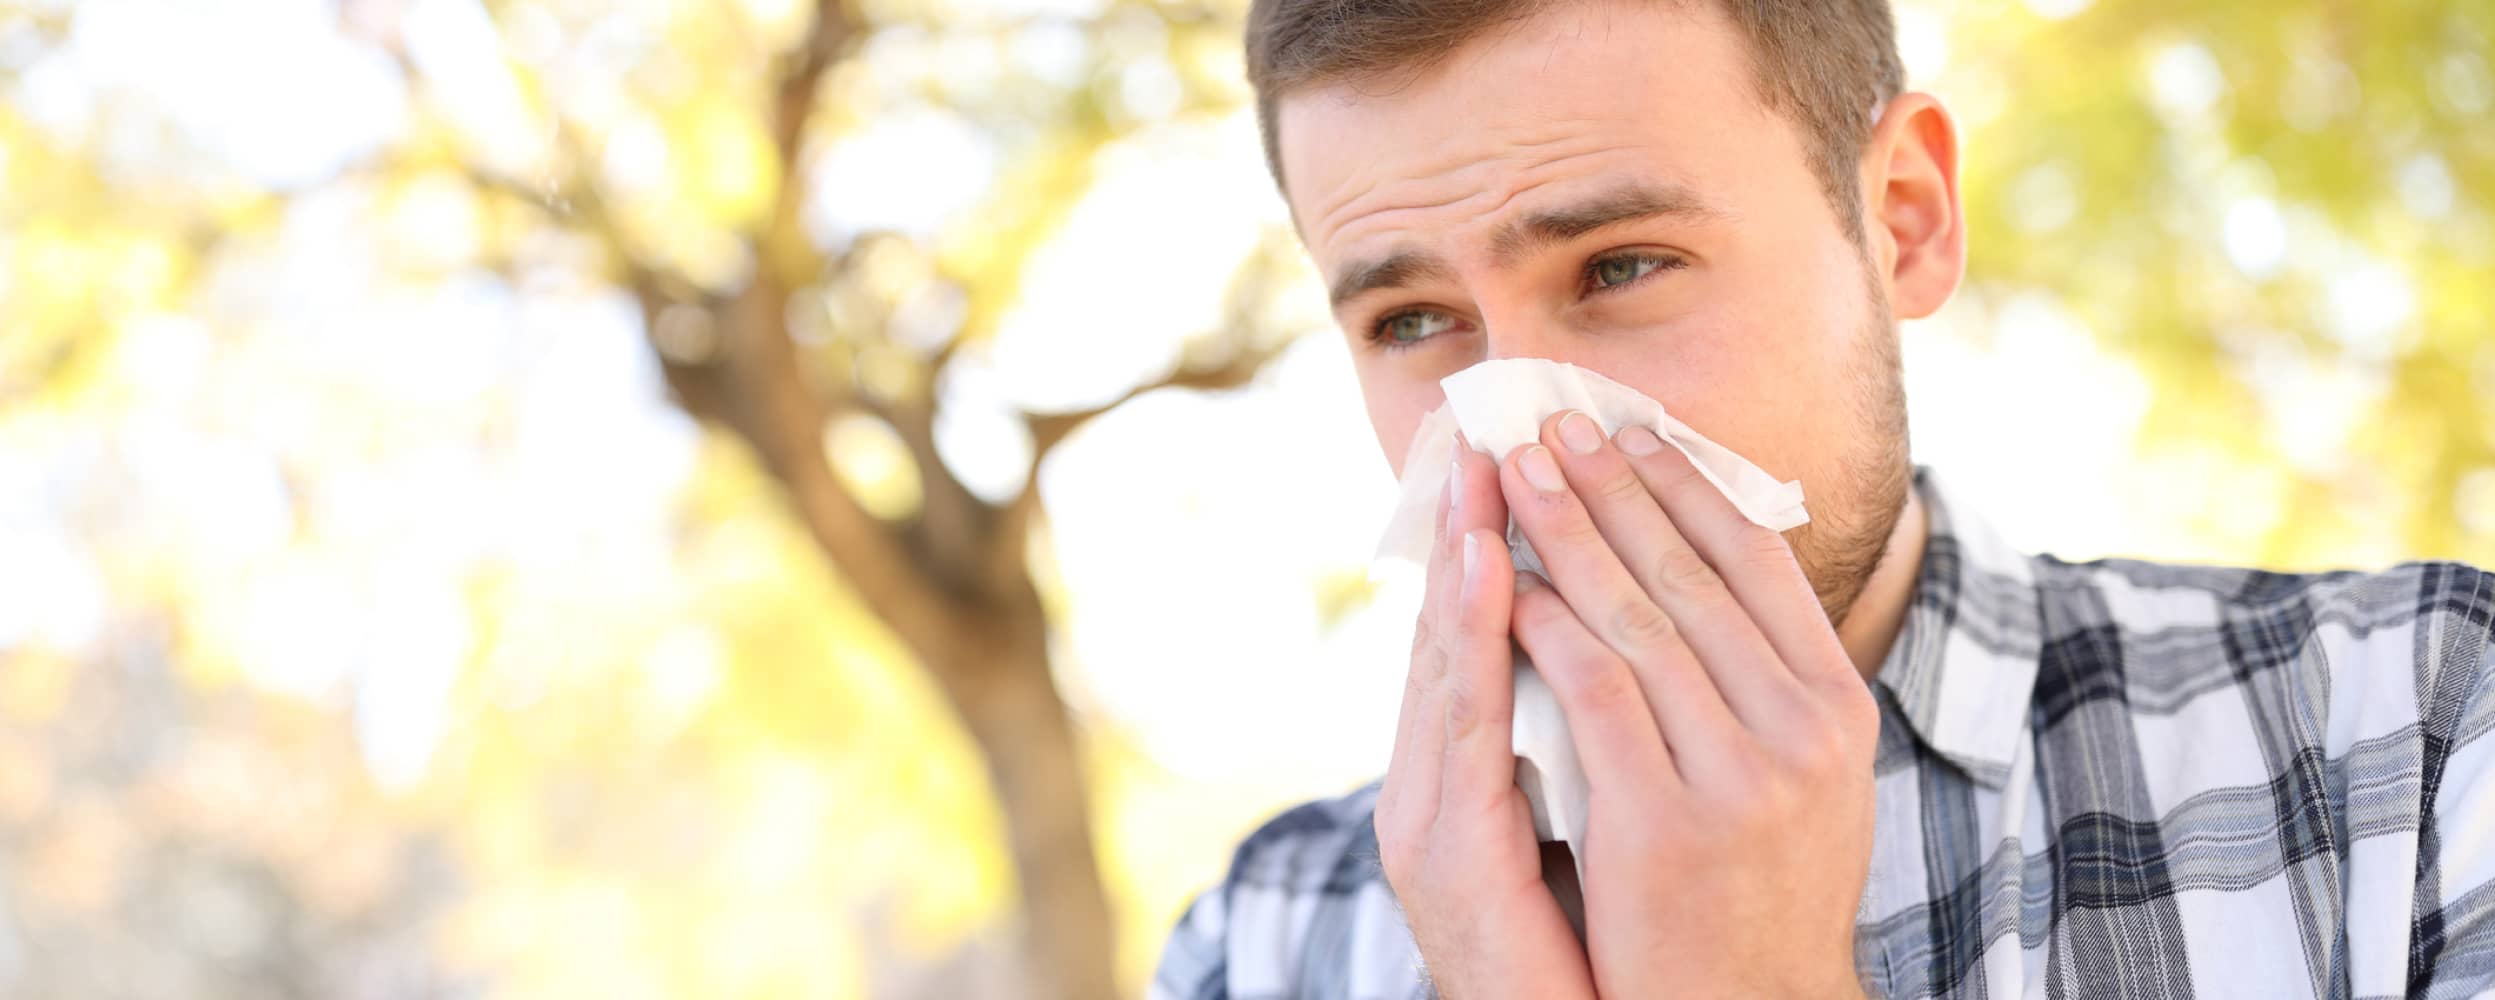 Alergia a los cambios de temperatura - Salud Savia